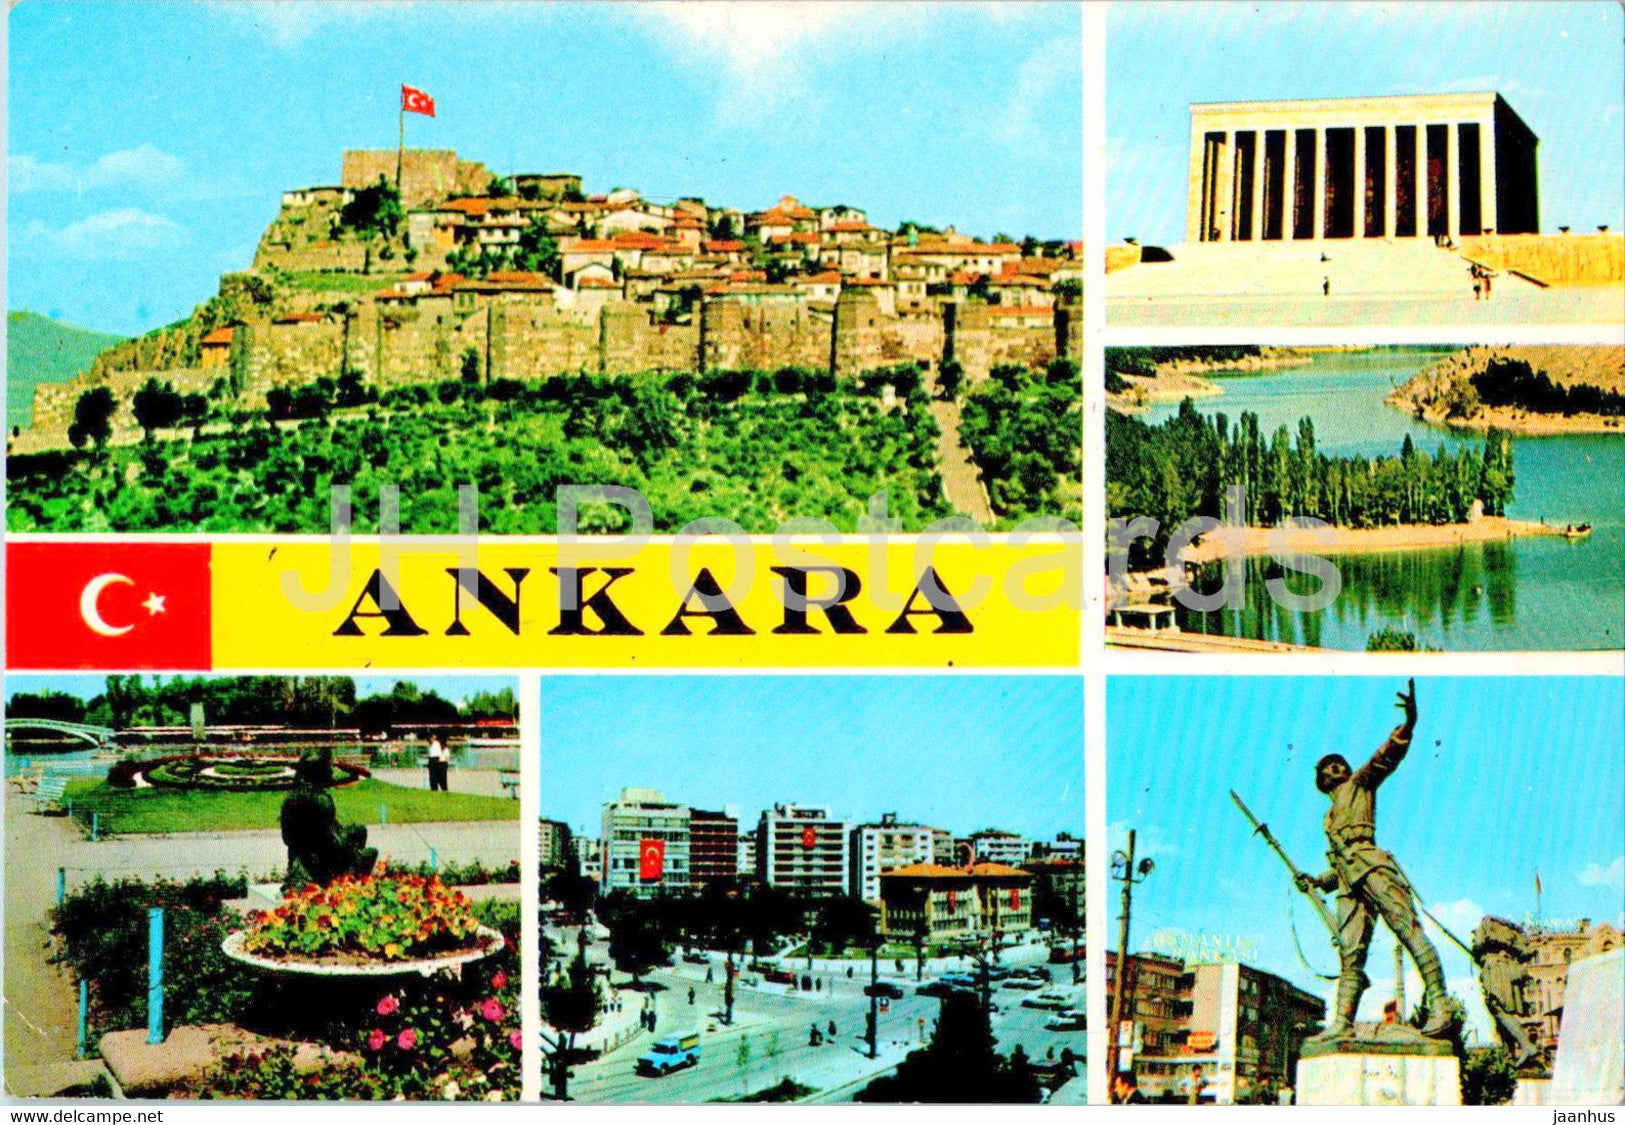 Ankara - multiview - 6-30 - Turkey - unused - JH Postcards